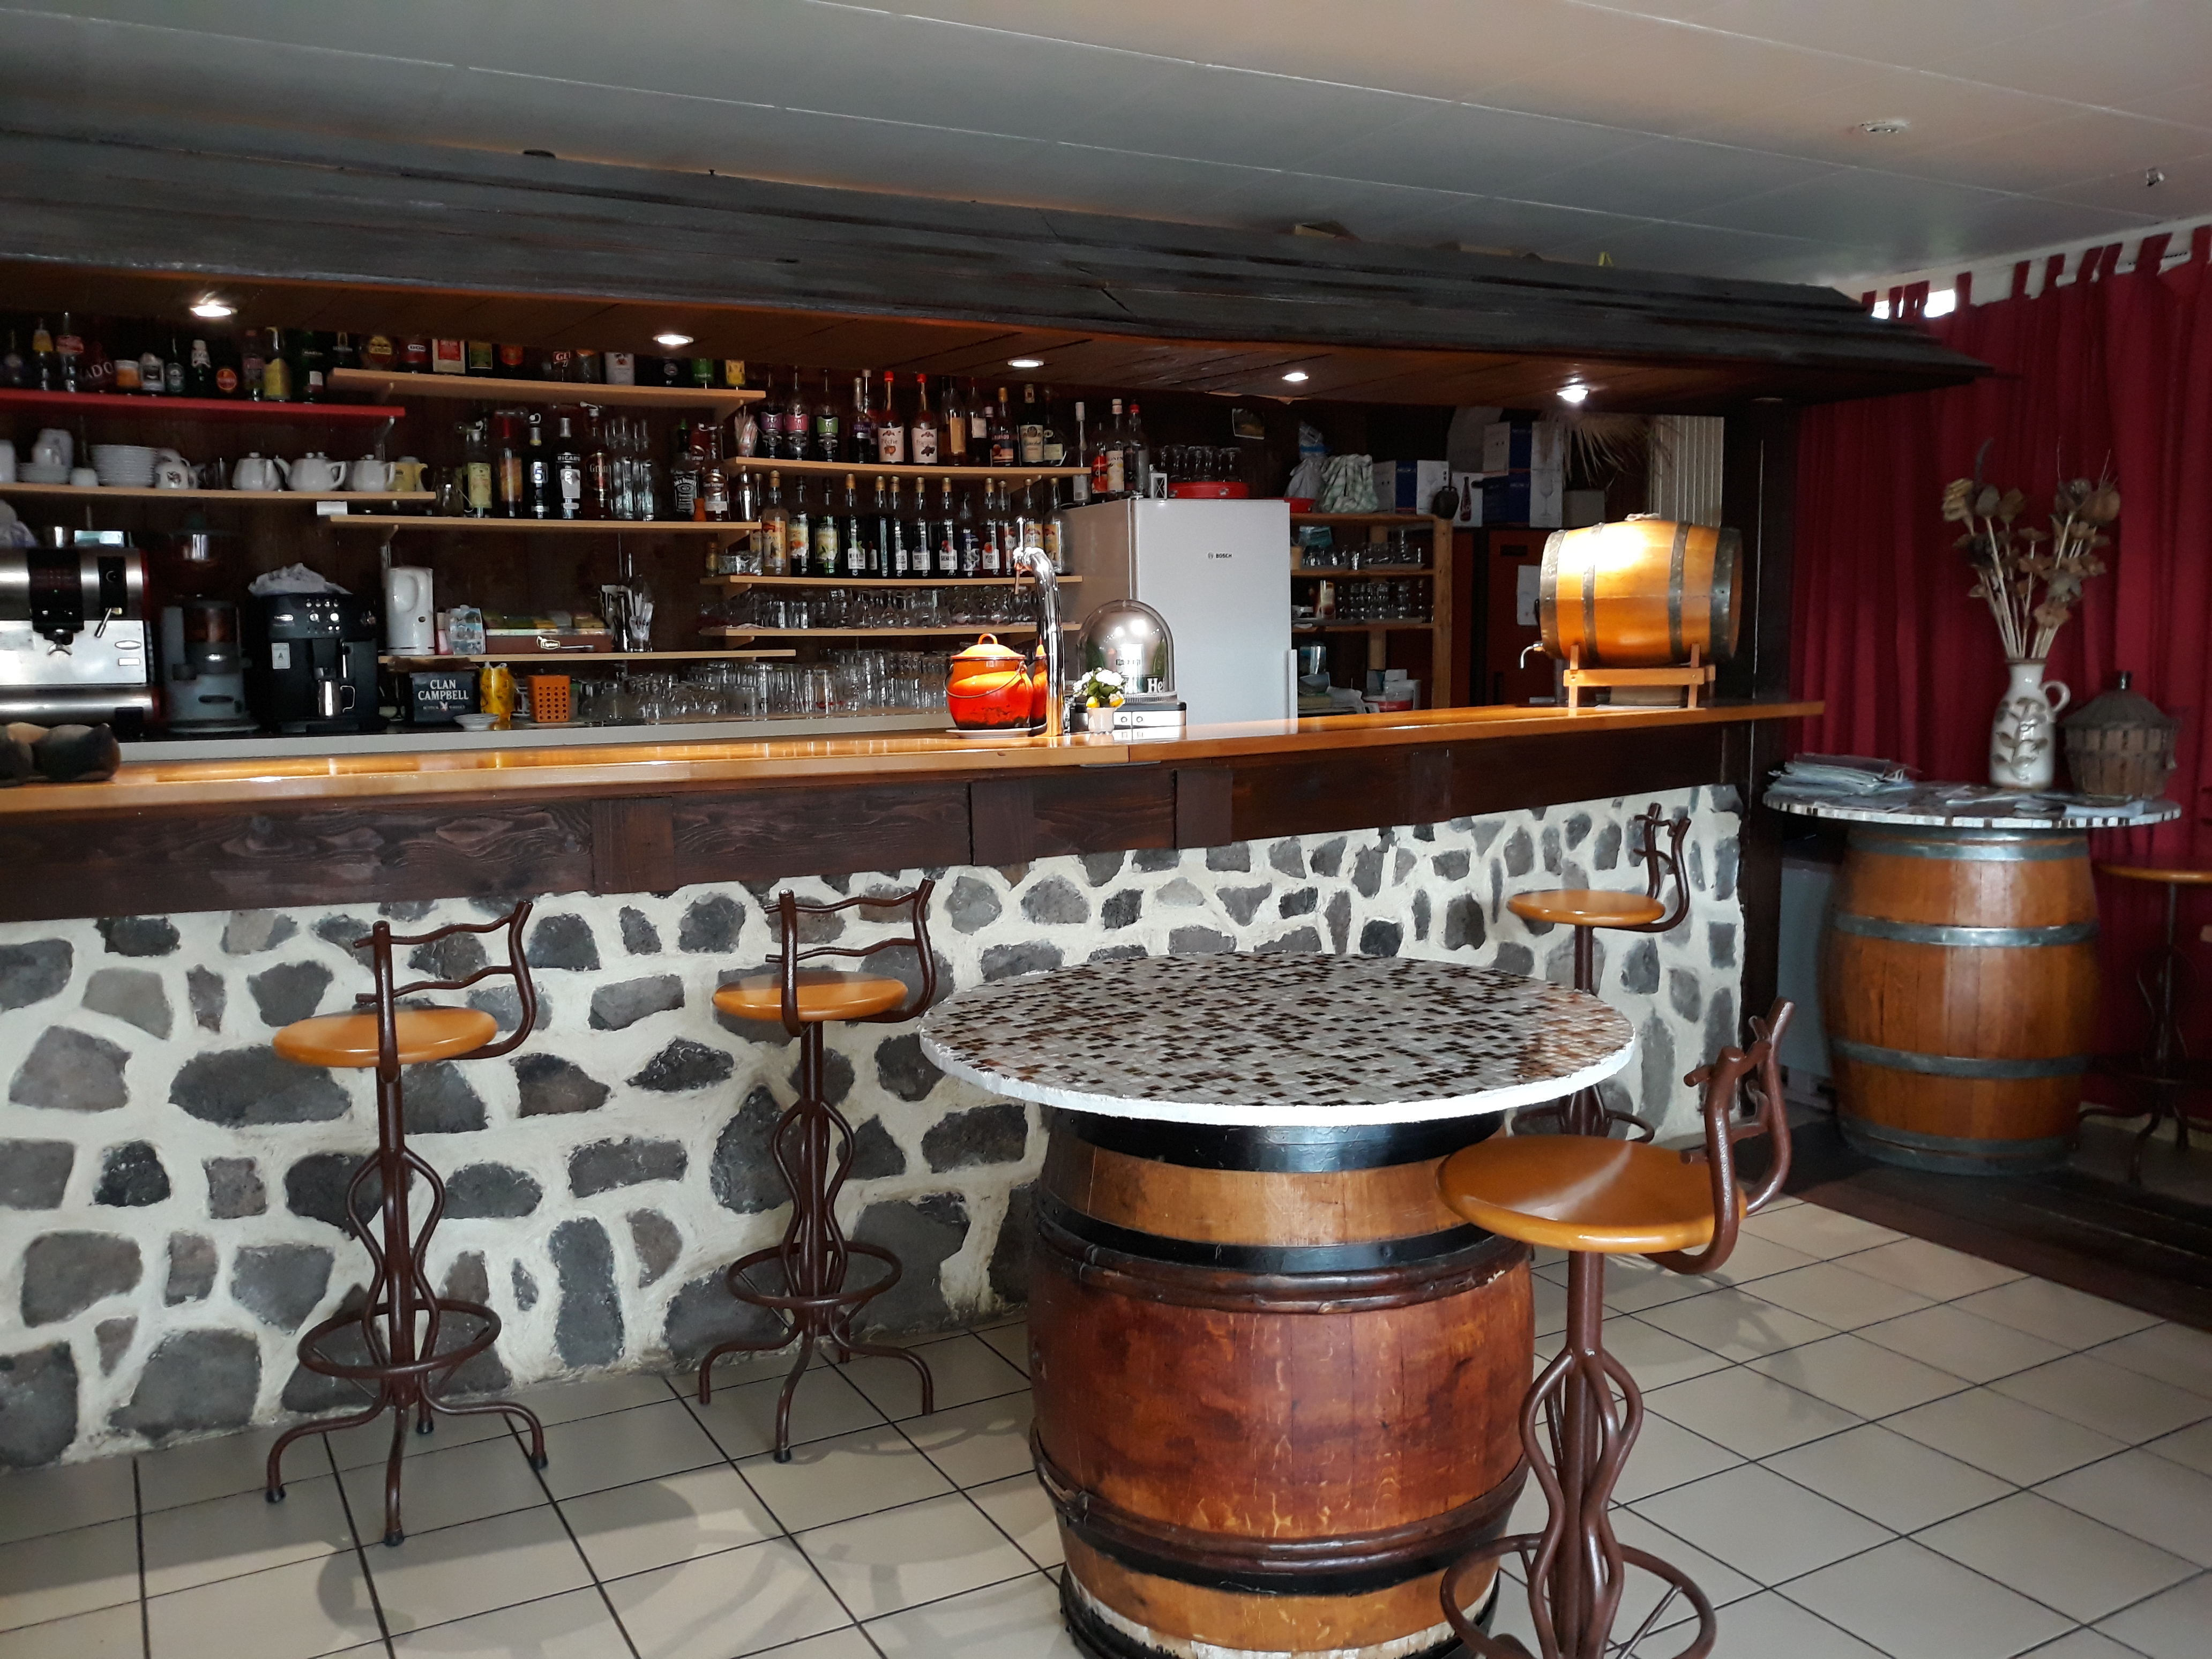 Affaire à saisir.

Bar restaurant, situé dans un village dynamique de 1000 habitants, au cœur de la chaîne des puys, à 10 mn du Puy de dôme, 20 mn de Vulcania, 25 mn de Clermont-Ferrand, au bord de la D2089.

Cet établissement à une capacité d'accueil de 45 couverts dans la salle du restaurant dotée d'une cheminée, possibilités de 30 couverts dans la salle du bar, et environ 40 couverts en terrasse.
Il dispose d'un parking communal devant l'établissement, avec place handicapée, et possibilité de garer les bus.
Accès handicapés, toilettes PMR, label tourisme et handicap.
Petit fûté.
Ce restaurant propose une cuisine traditionnelle.
La clientèle est variée avec les locaux qui organisent des repas de famille ou d'événements, les Clermontois clientèle fidèle depuis plus de 15 ans, les touristes via les nombreux gîtes et camping existants au sein du village et aux alentours, la clientèle de  passage via la D2089 axe routier très fréquenté et clientèle de groupe via les agences de voyages ou associations.
Cuisine professionnelle équipée et bien agencée.
Possibilité d'avoir un logement de fonction.
Les murs appartiennent à la commune dont vous louerez les murs pour un loyer modérer de 900 euros par mois.
Village doté de toutes les infrastructures nécessaires pour bien vivre à la campagne, école , crèche, tous commerces ( boulangerie, fromagerie, épicerie, charcuterie, coiffeur, cabinet d'esthétique, médecins (généralistes, infirmiers, kinésithérapeute), nombreuses associations sportives,culturelles etc, en perpétuel développement.

Actuellement, l'établissement fonctionne en couple.

Affaire à saisir, par des professionnels du secteur.

Chauffage au gaz avec cuve.